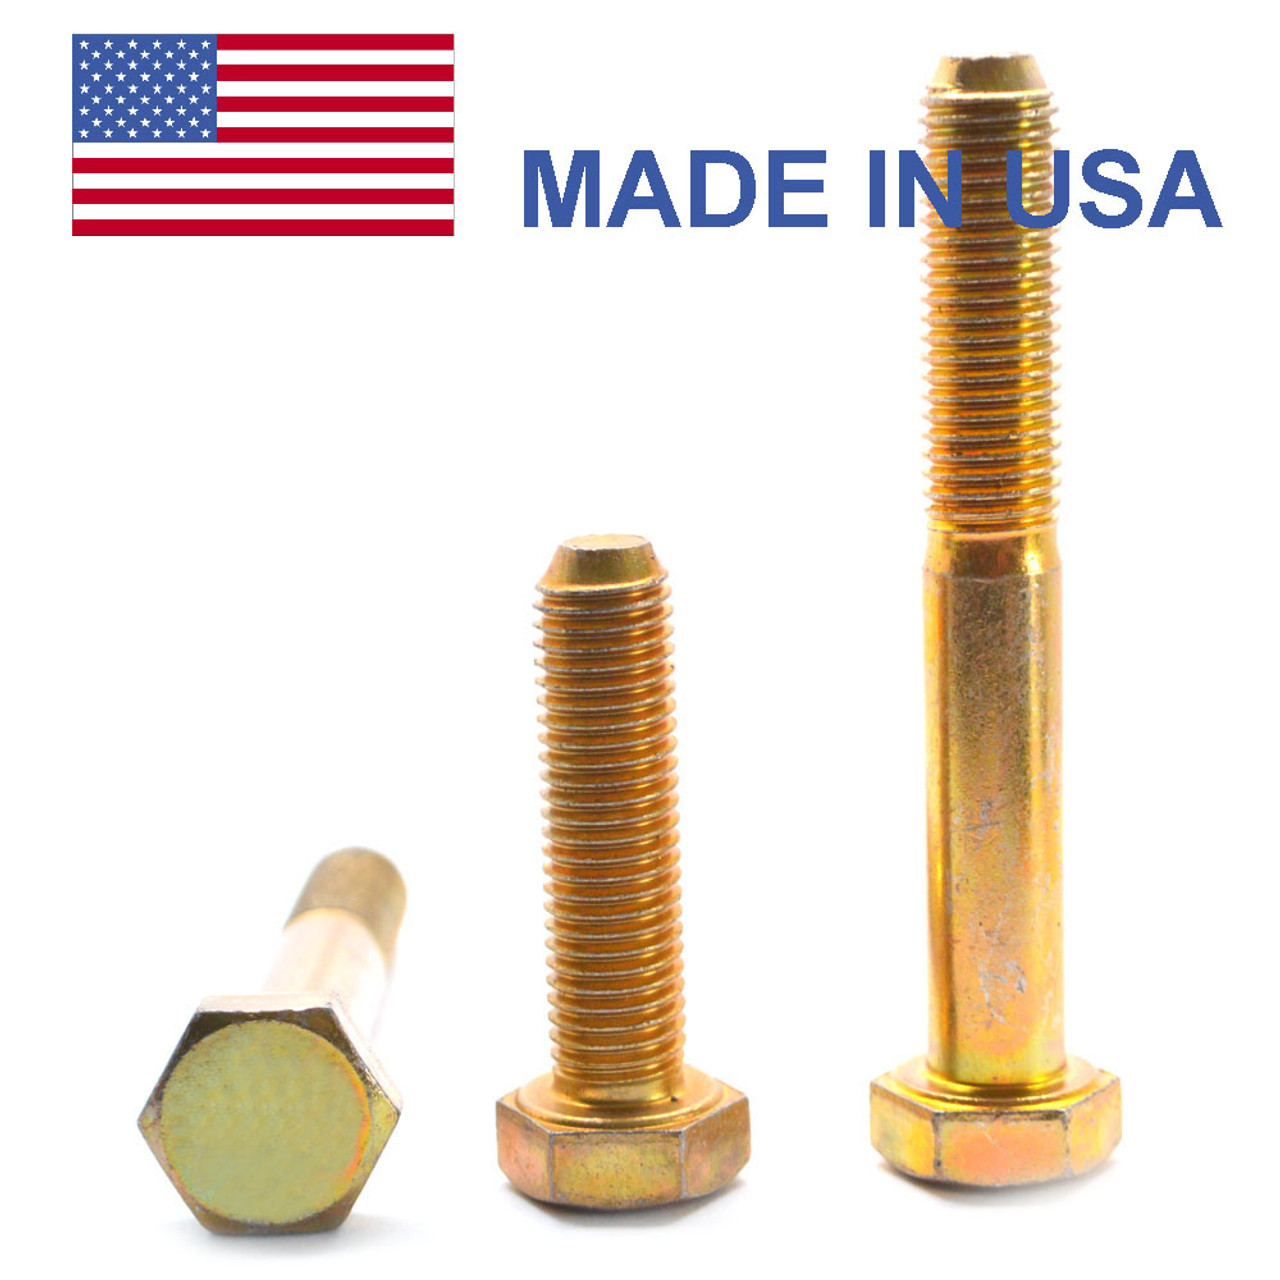 5/16"-24 x 7/8" (FT) Fine Thread Grade 8 Hex Cap Screw (Bolt) - USA Alloy Steel Yellow Zinc Plated